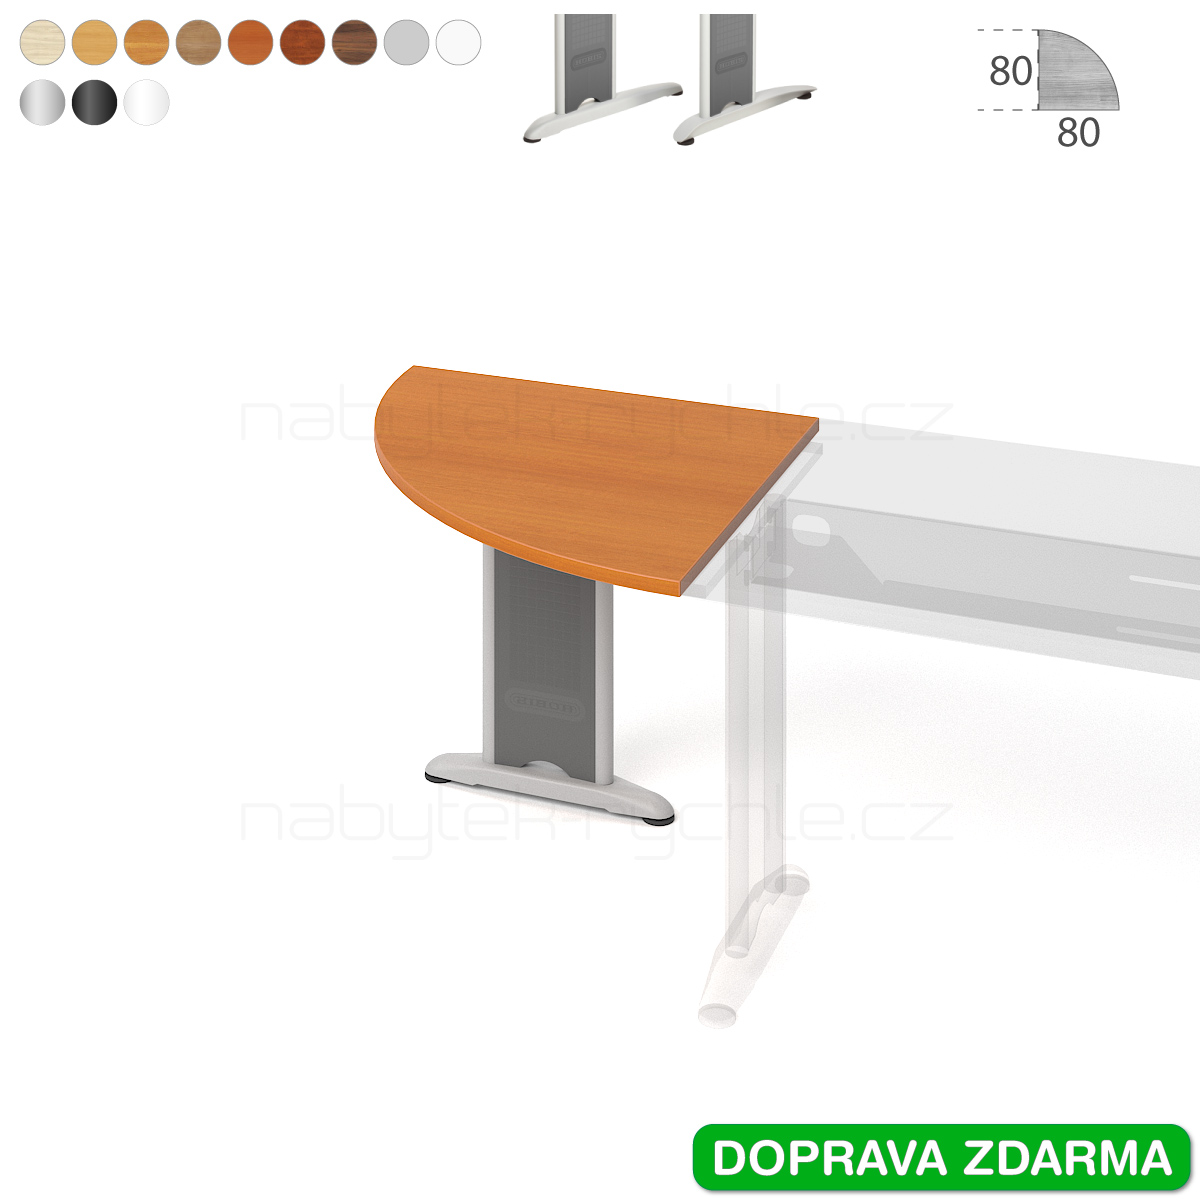 FP 901 P Hobis Flex - Stůl přídavný 80 x 80 (90°)